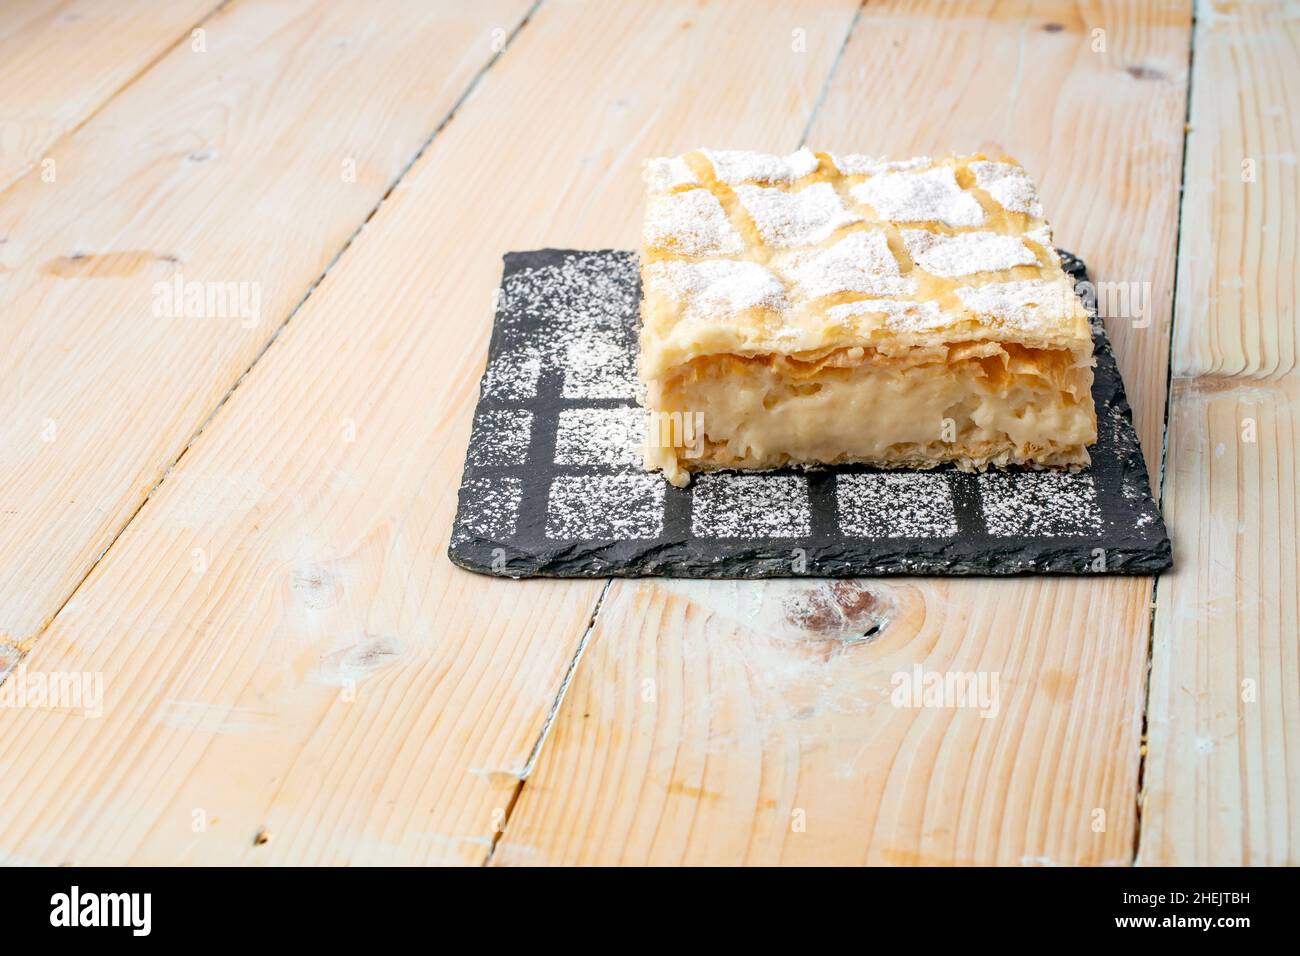 cremeschnitte o cremsnit torta su una pietra quadrata nera mattonella trama con polvere di zucchero cosparso e un bianco lavati tavole di legno tavola Foto Stock